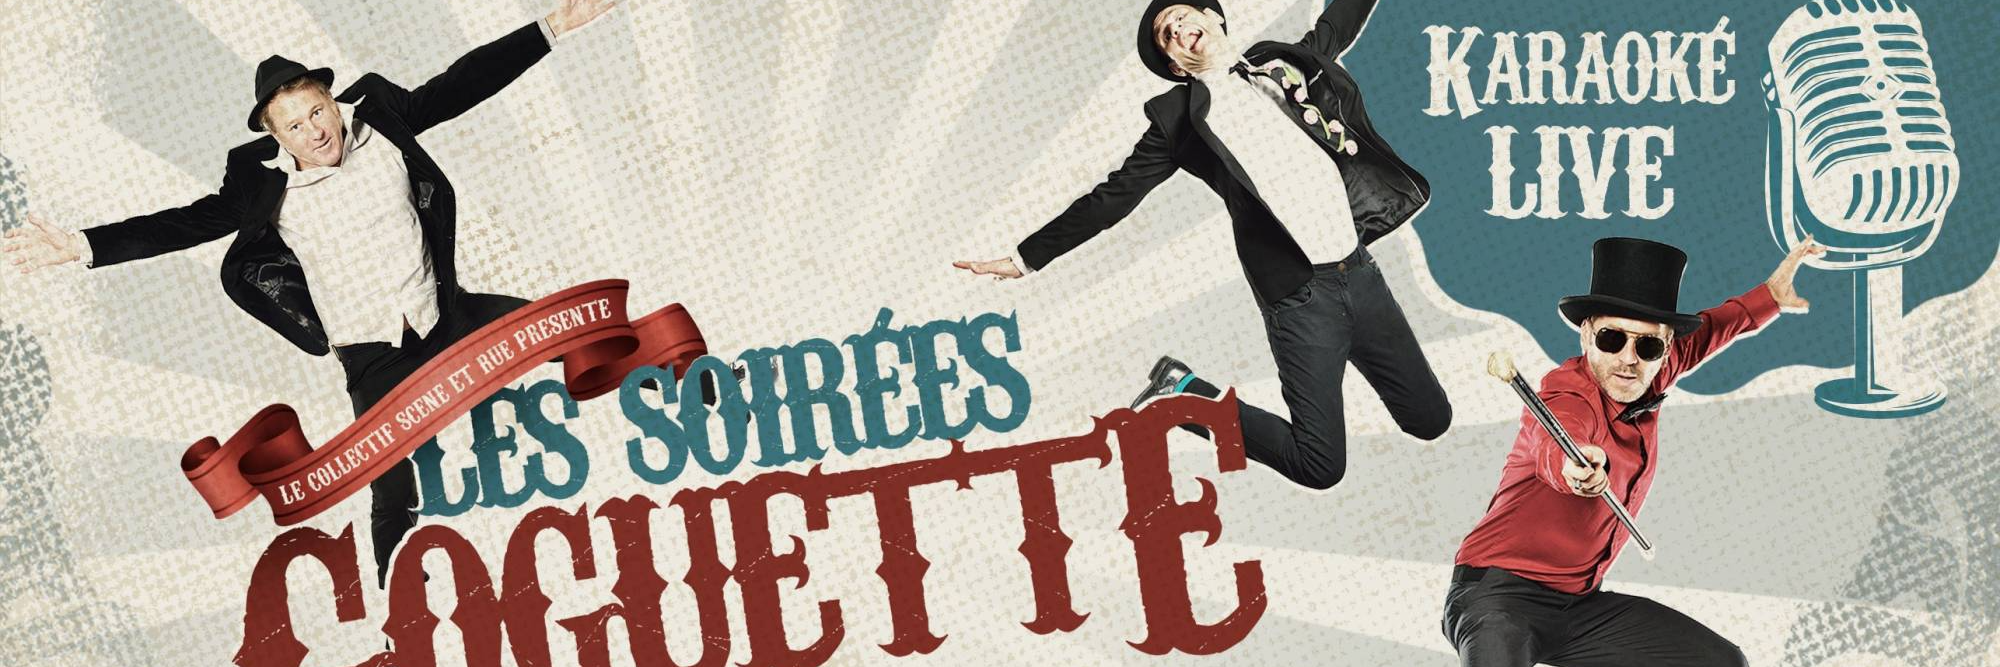 LA GOGUETTE EN FOLIE, karaoké live, DJ DJ en représentation à Bouches du Rhône - photo de couverture n° 1